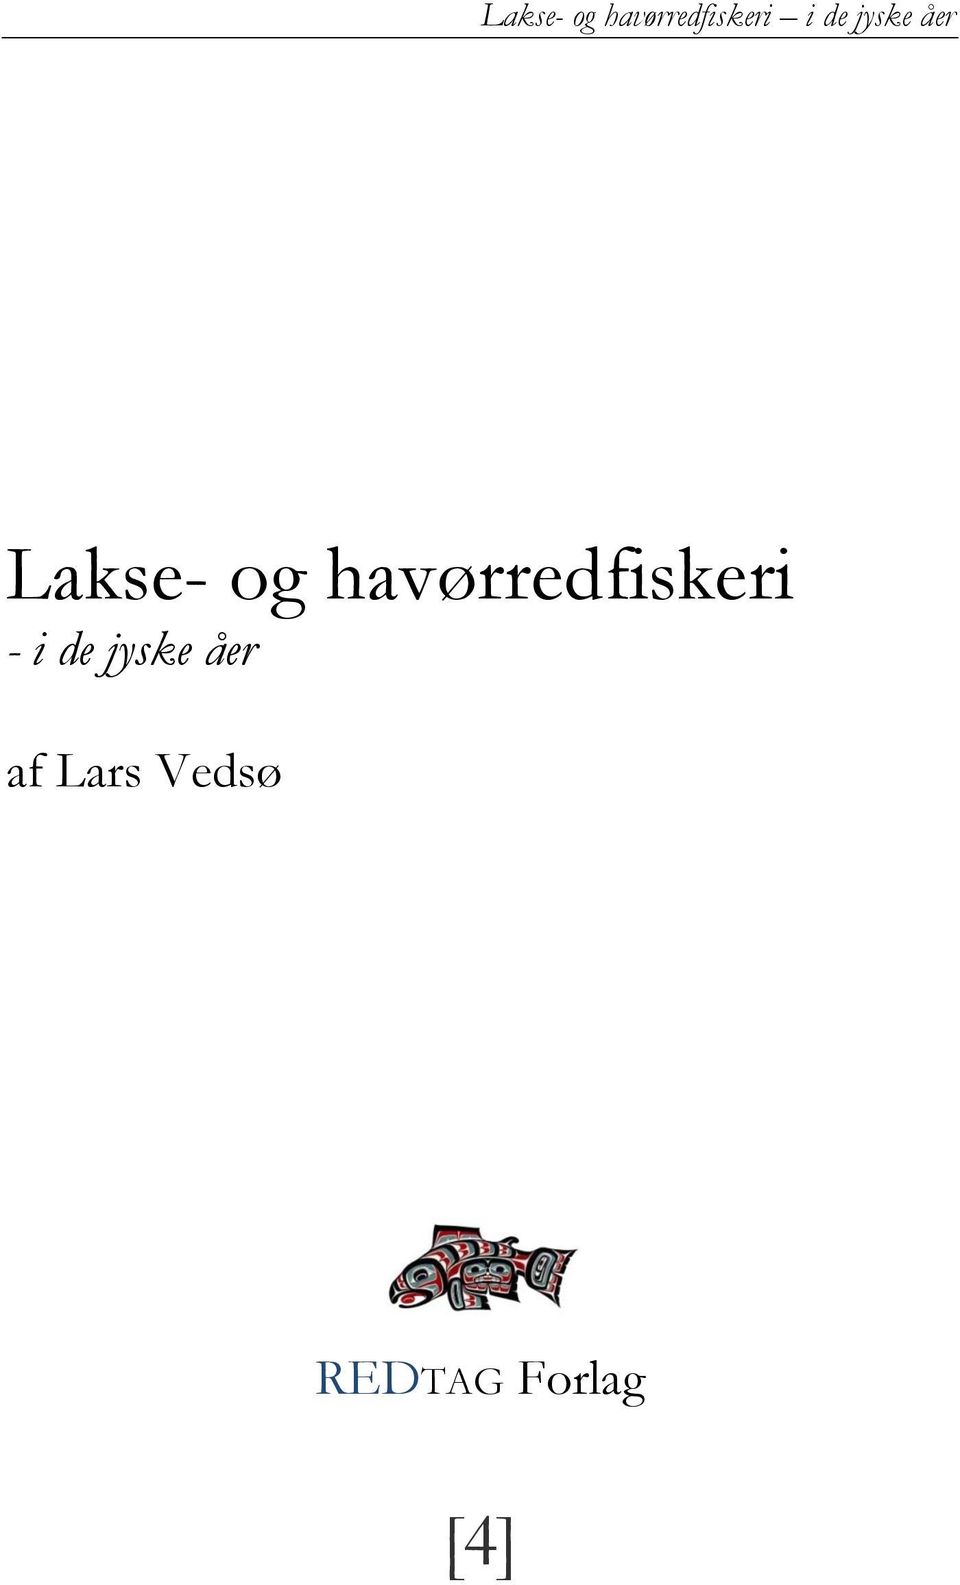 Lakse- og havørredfiskeri i de jyske åer. tilegnet Tinne, Venca og Henry [2] - Free Download